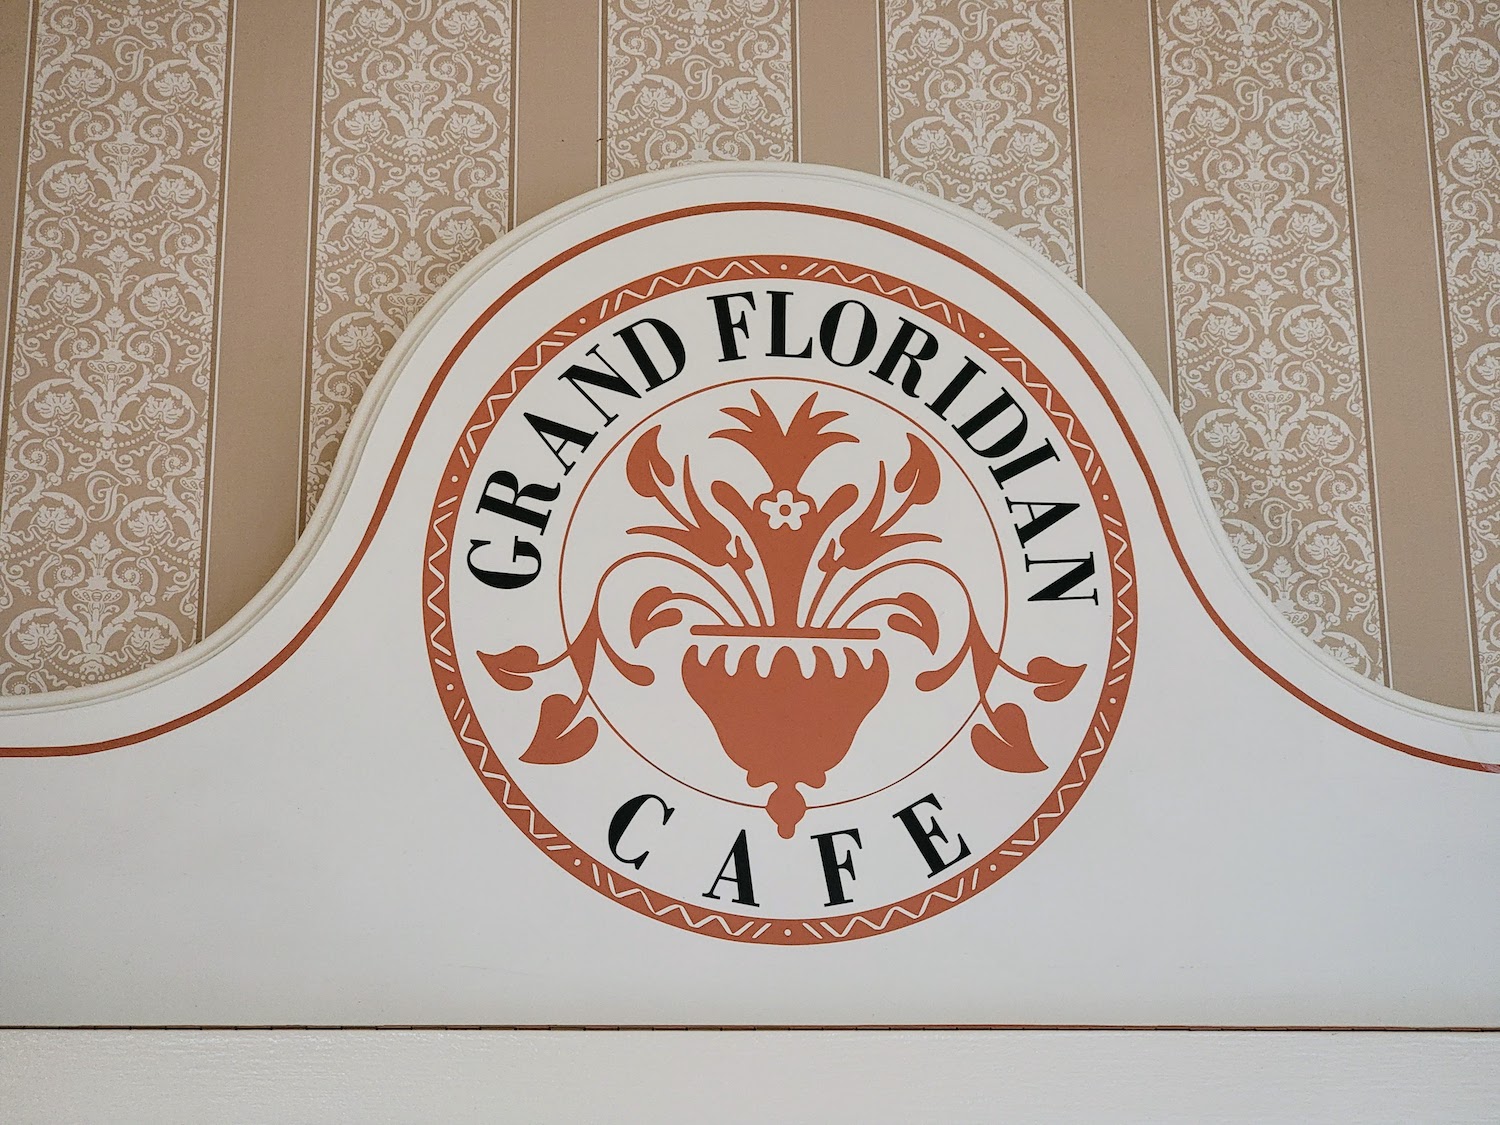 Grand Floridan Cafe Sign